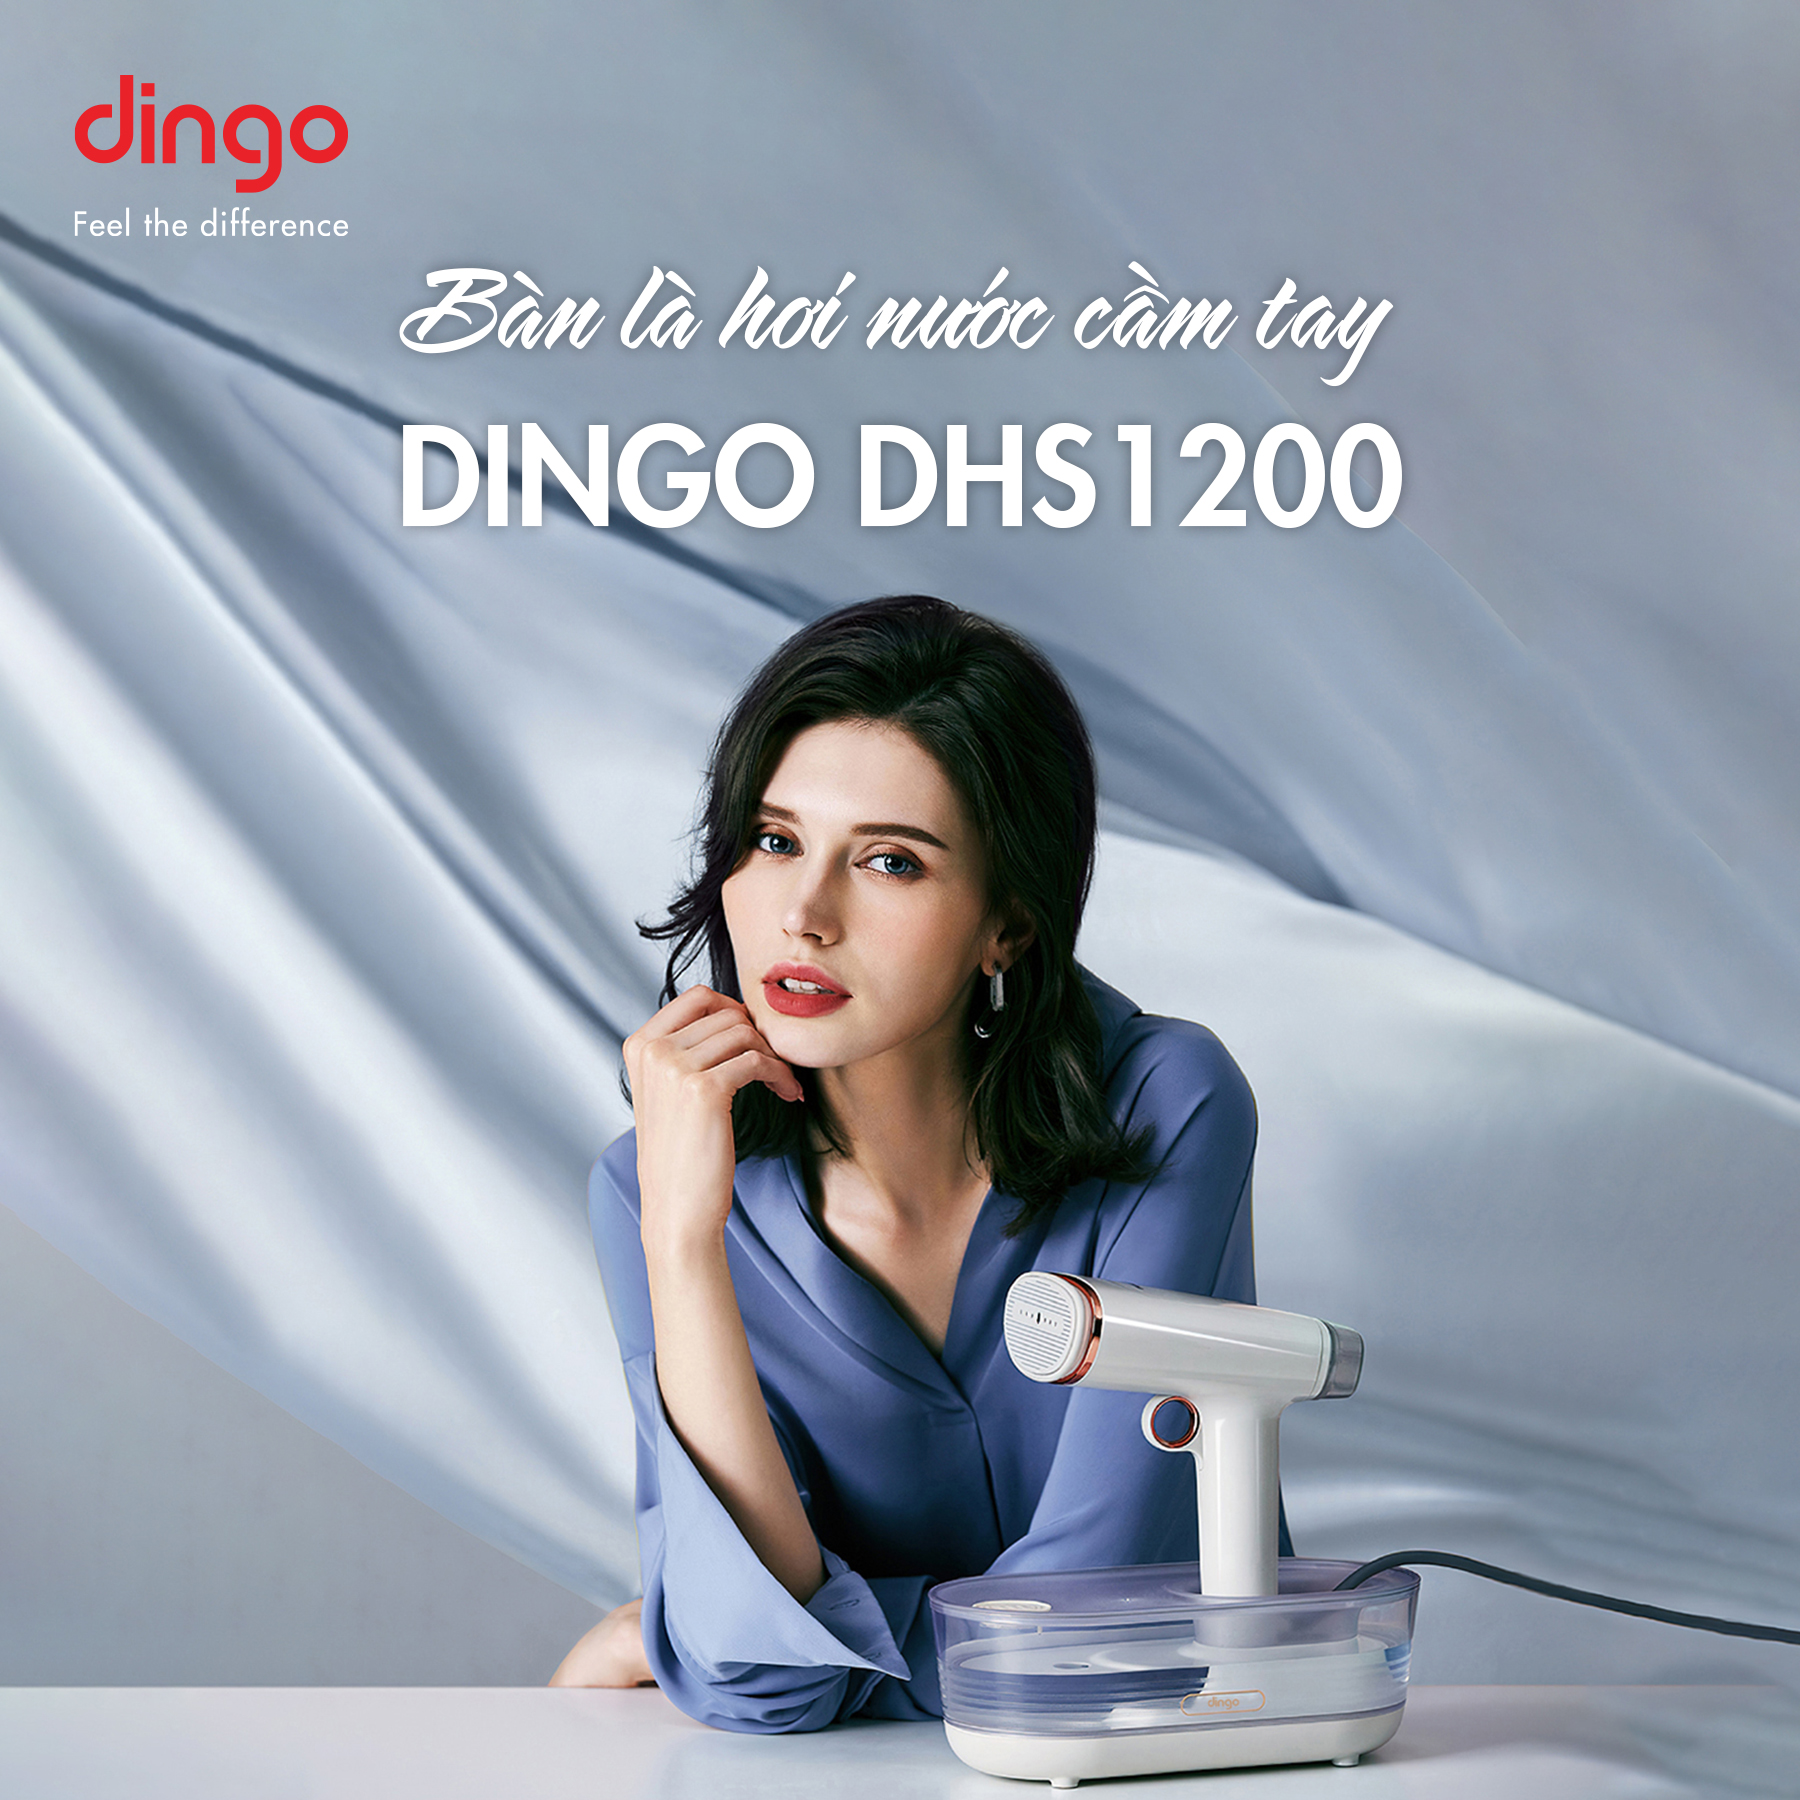 Bàn là hơi nước cầm tay DINGO DHS1200.